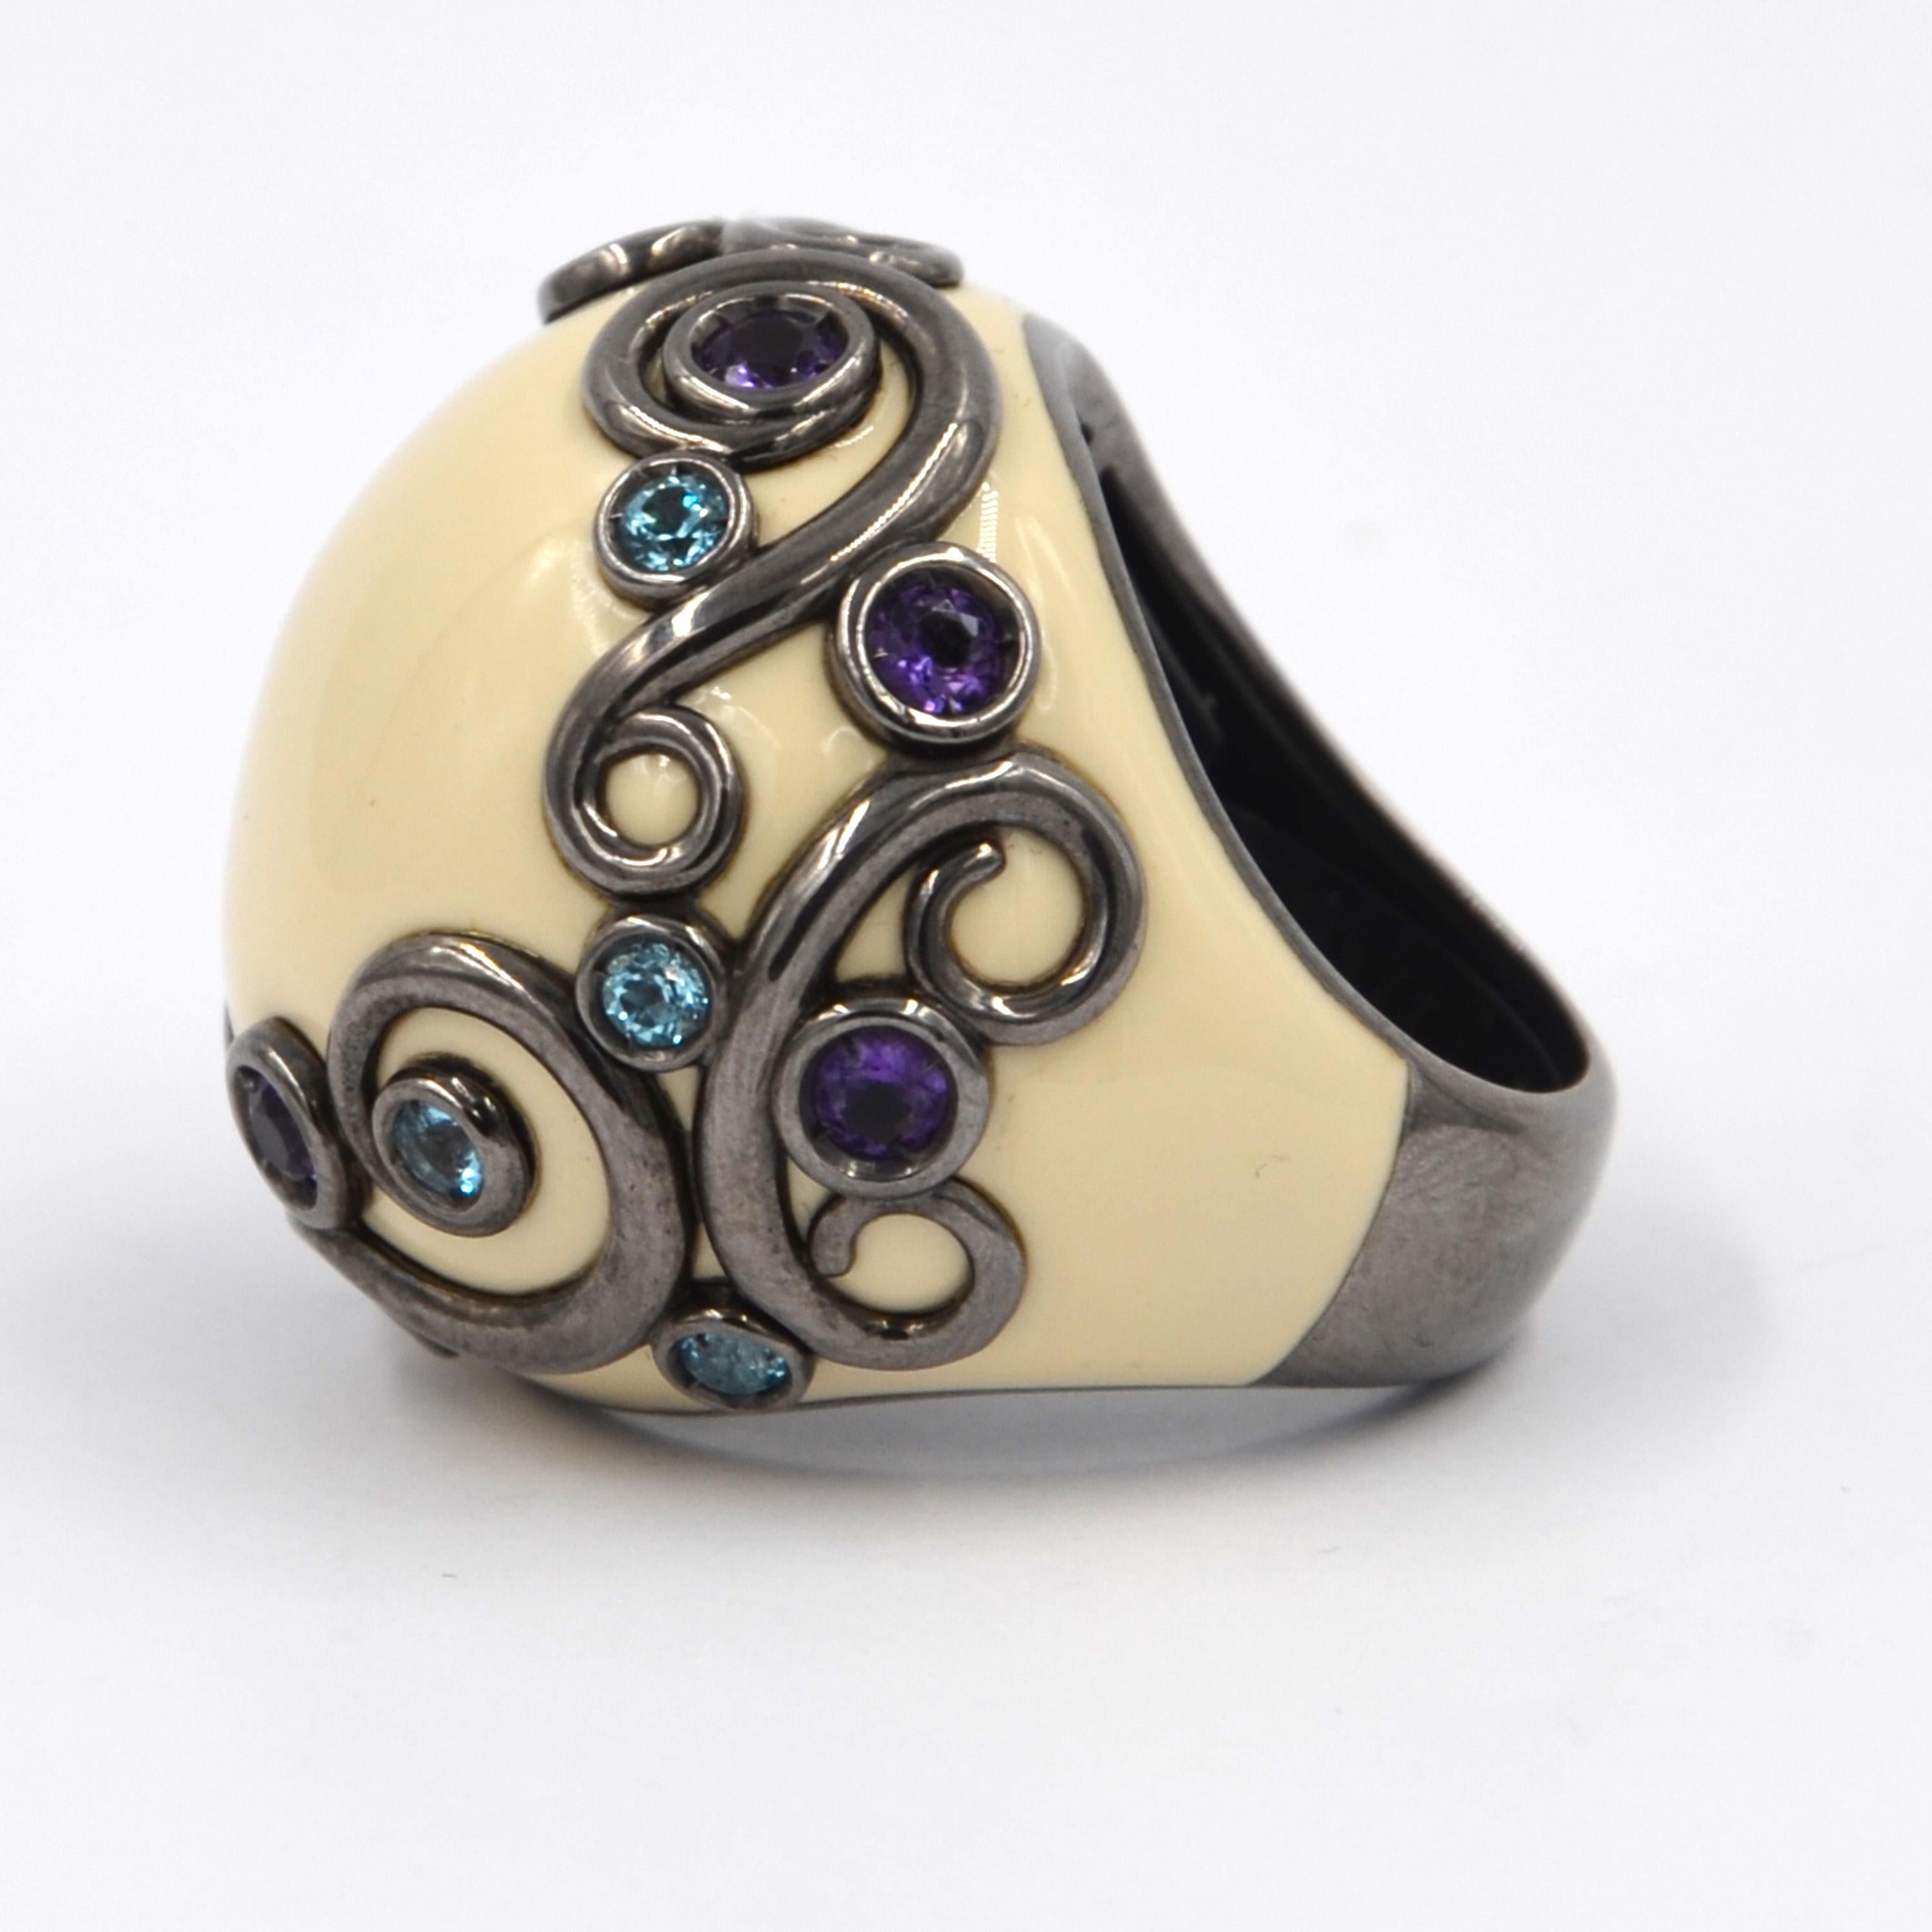 Ursprünglich um die Jahrtausendwende entworfen, ist dieser fabelhafte Ring aus Silber mit insgesamt 1,39 Karat Amethyst und Blautopas besetzt.  Handgefertigt in Italien, aus der Garavelli Lifestyle Collection. 
Entdecken Sie zeitlose Eleganz mit